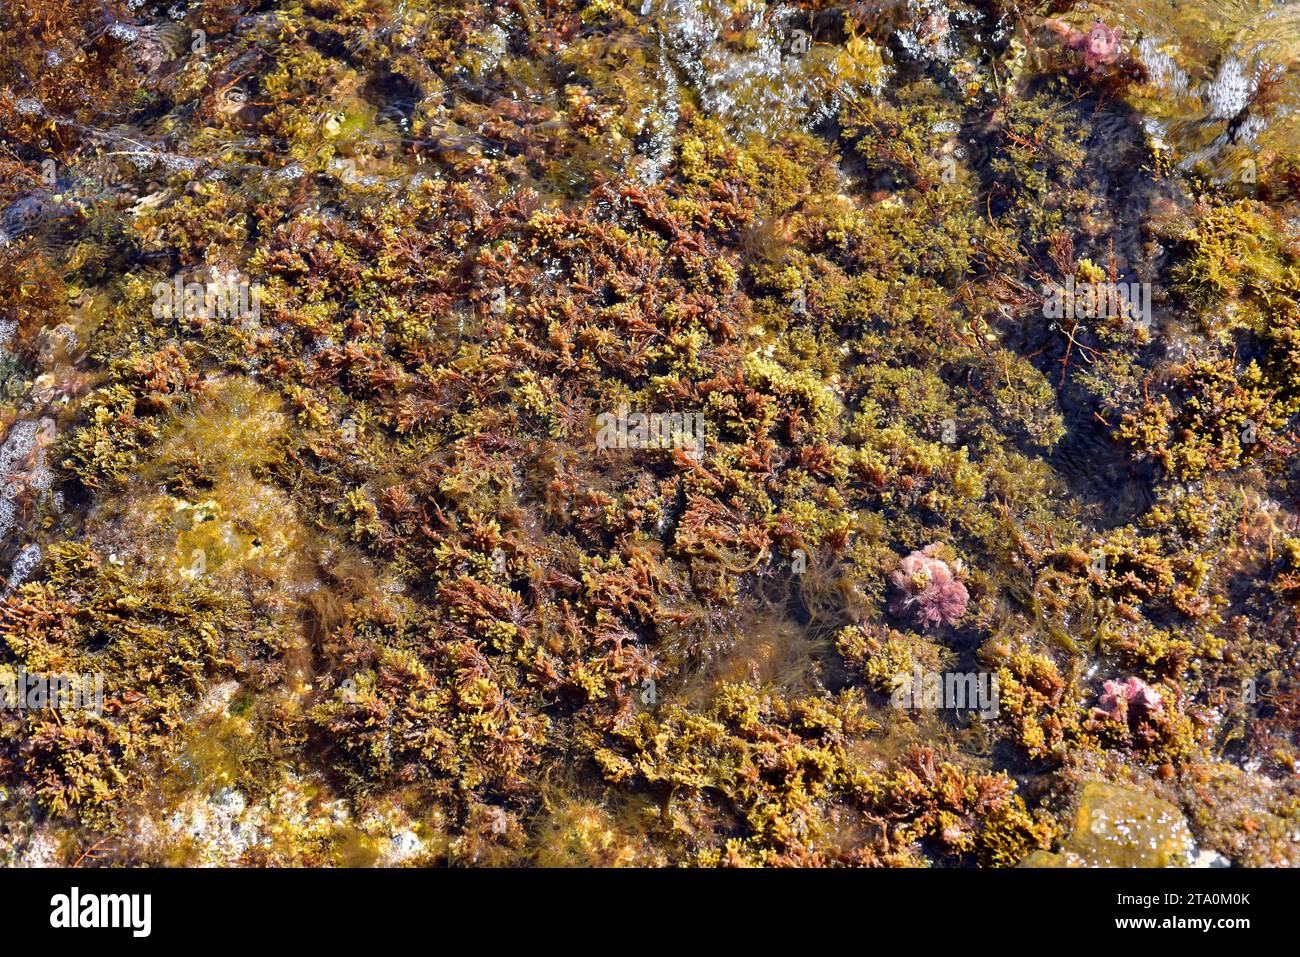 Cystoseira est une algue brune marine. Cabo Creus, province de Gérone, Catalogne, Espagne Banque D'Images